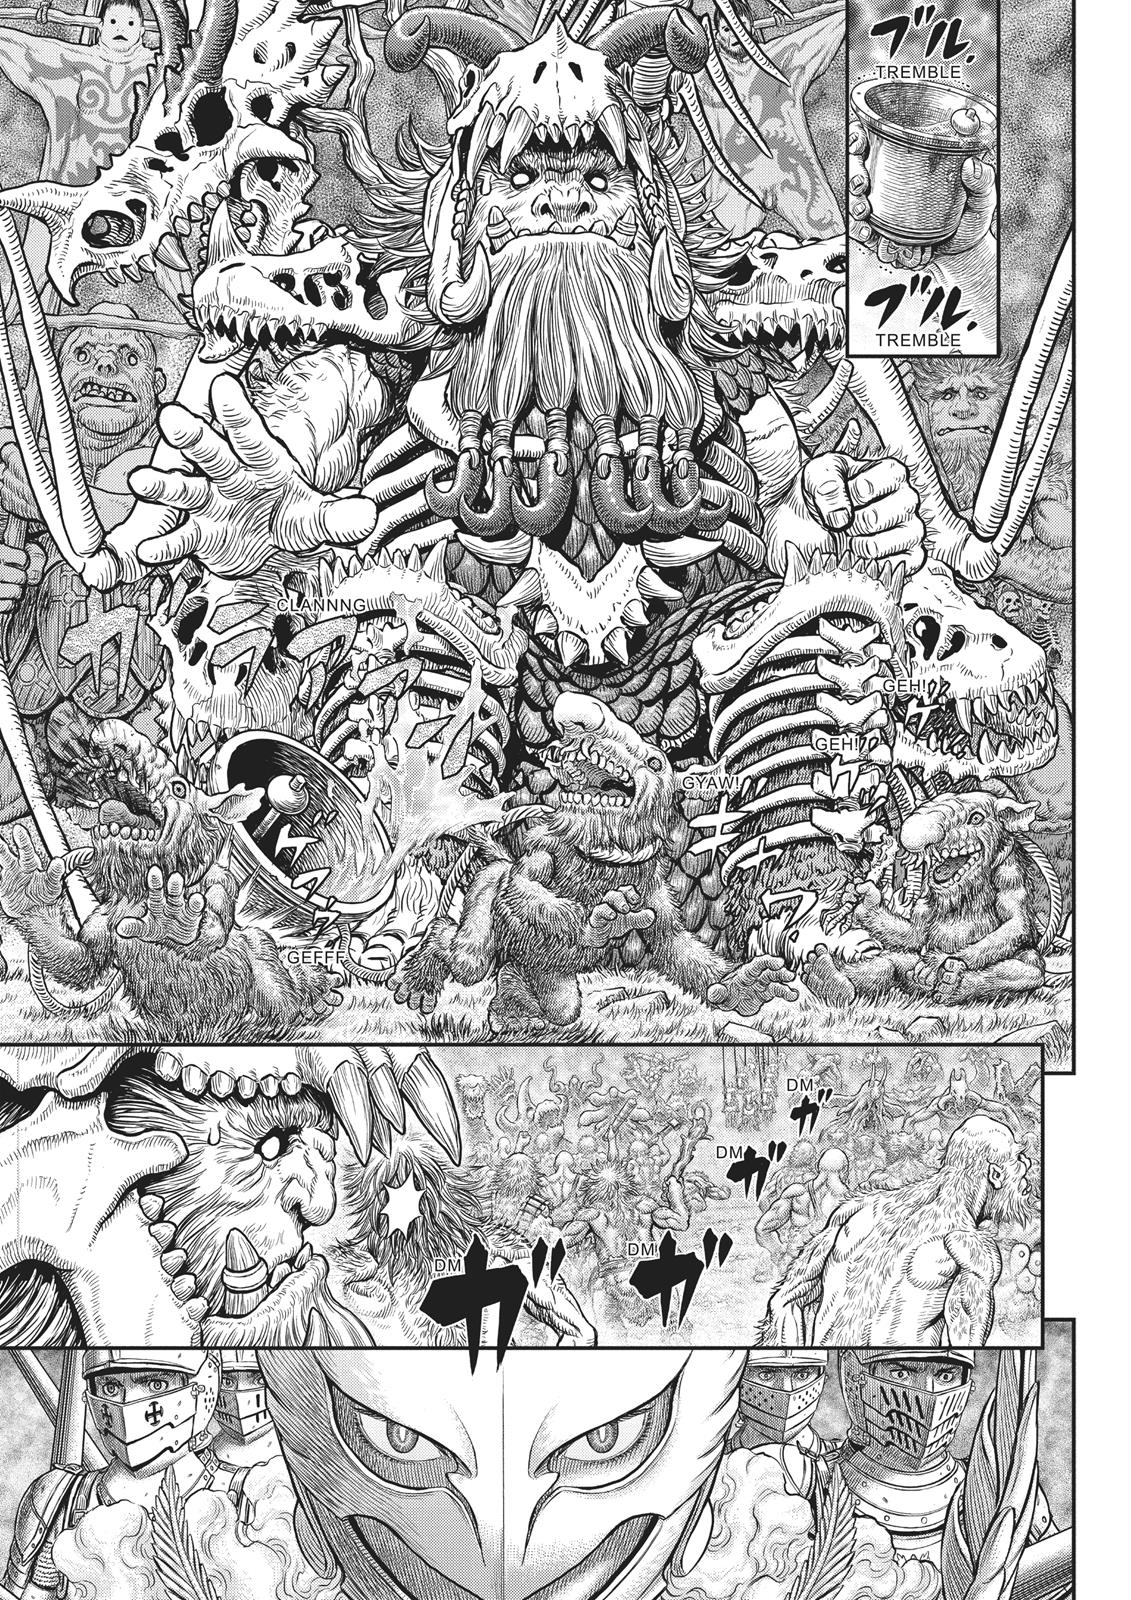 Berserk Manga Chapter 356 image 11